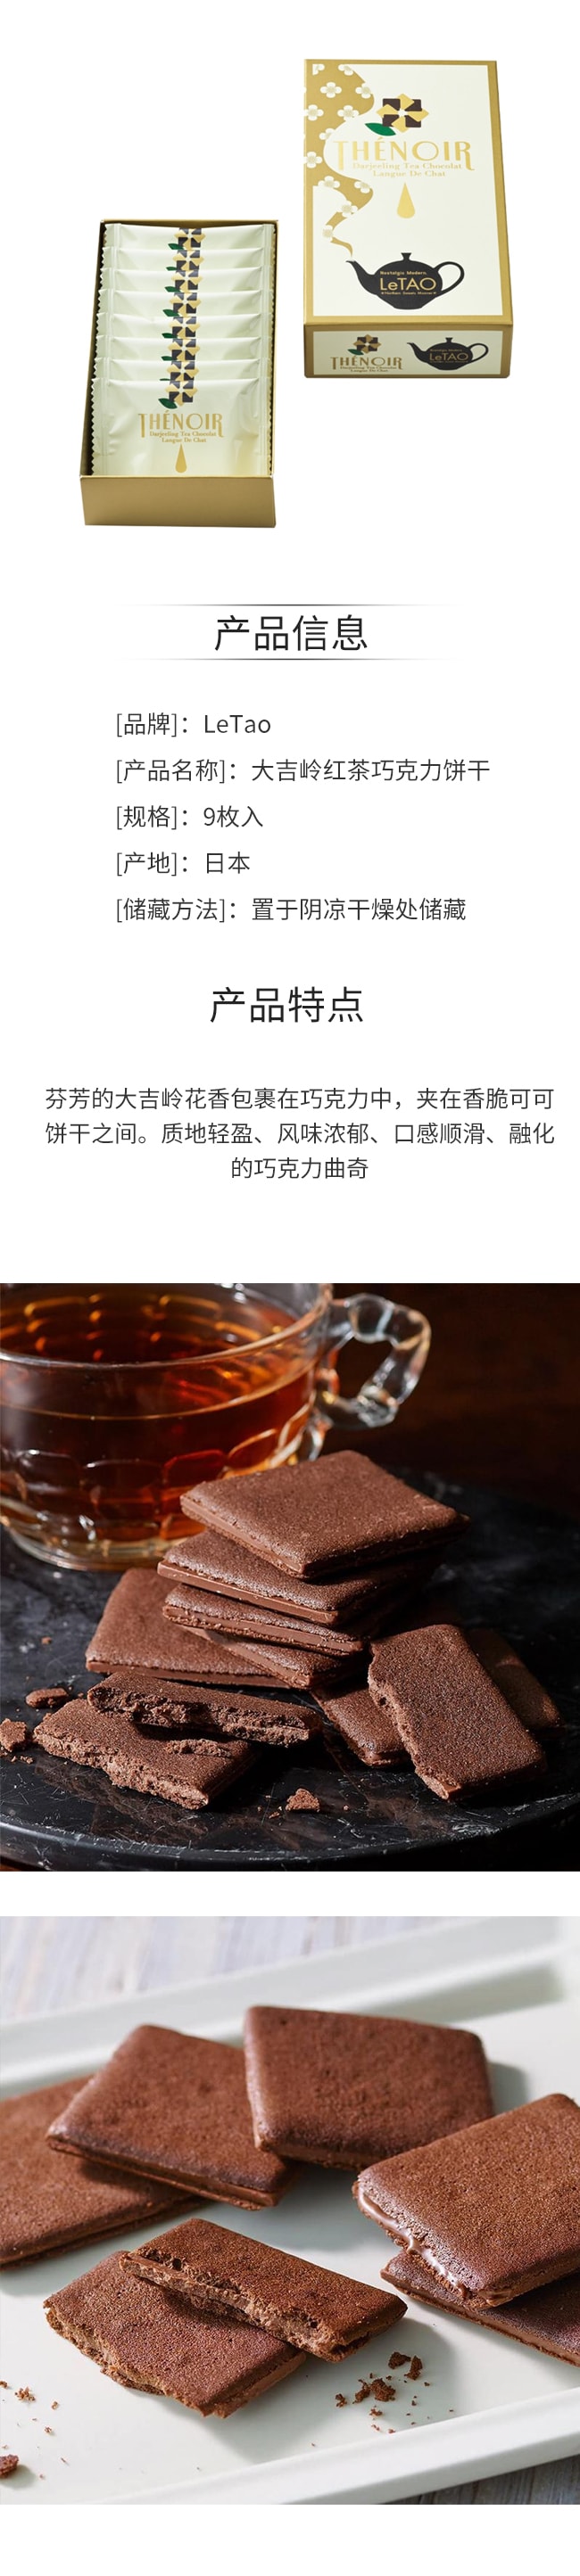 【日本直邮】LeTao 大吉岭红茶巧克力饼干9枚入 送礼必备